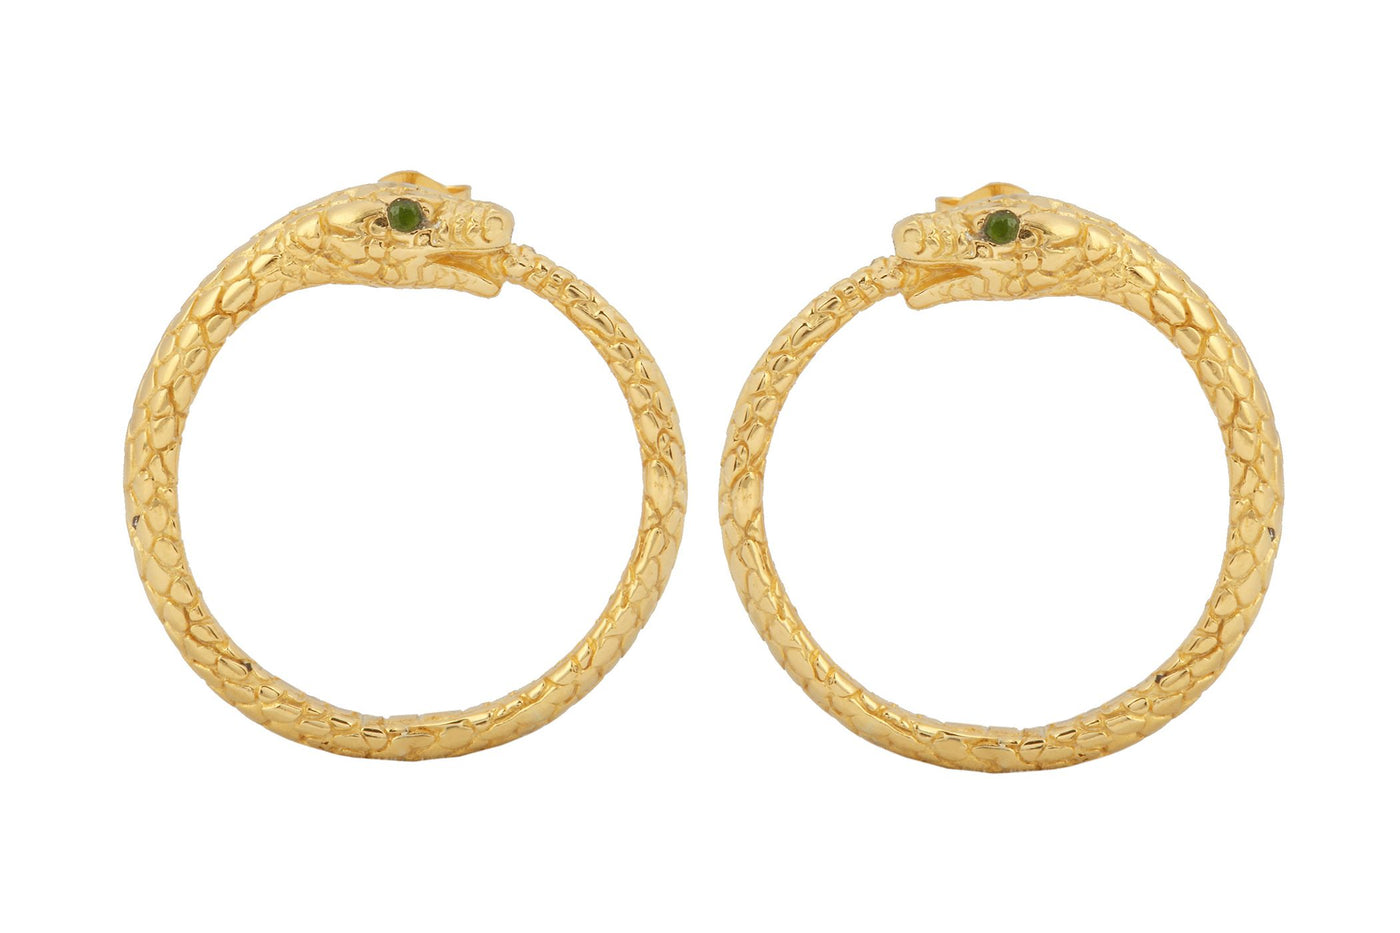 Earrings "Snake". Gold plated